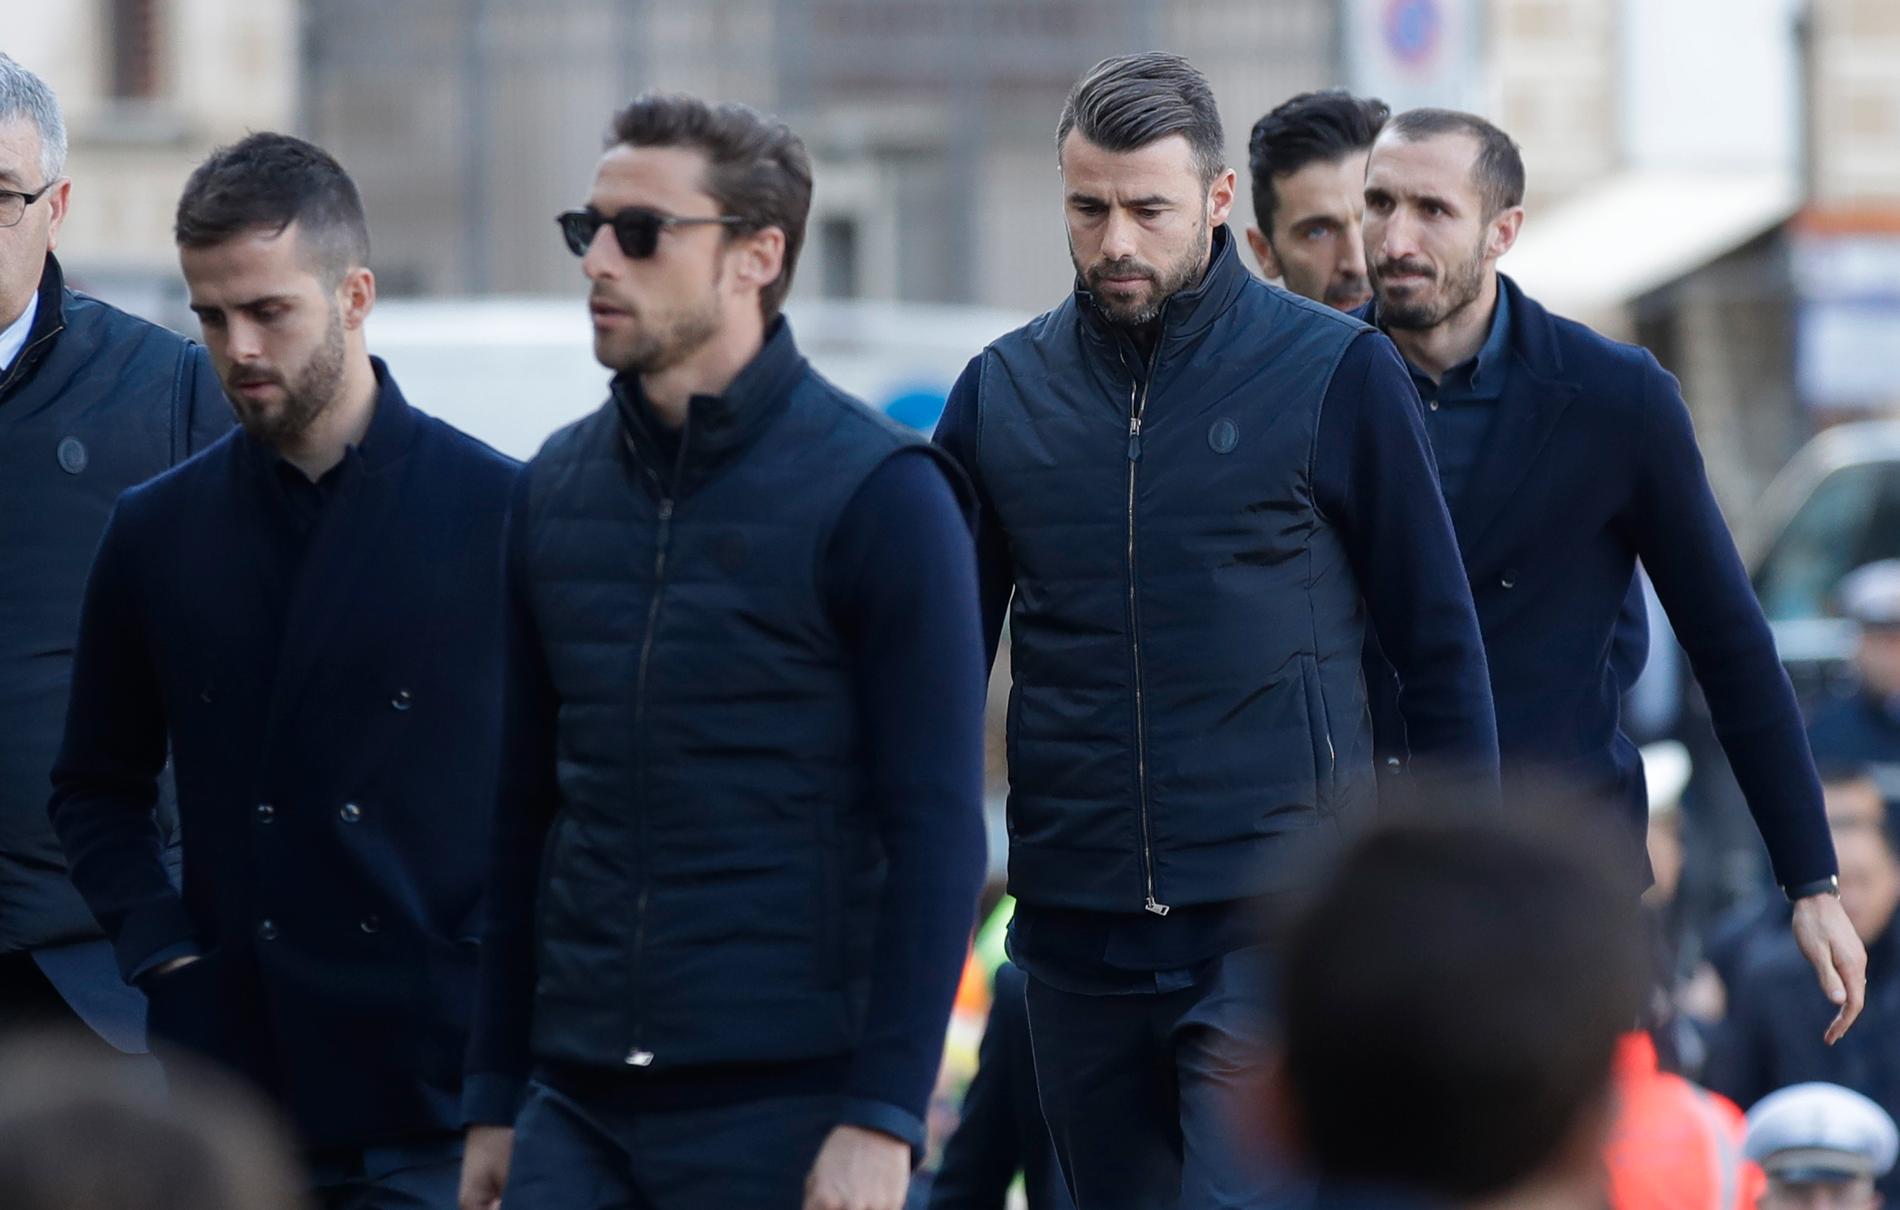 Juventusspelarna anländer – bland annat Chiellini längst till höger.